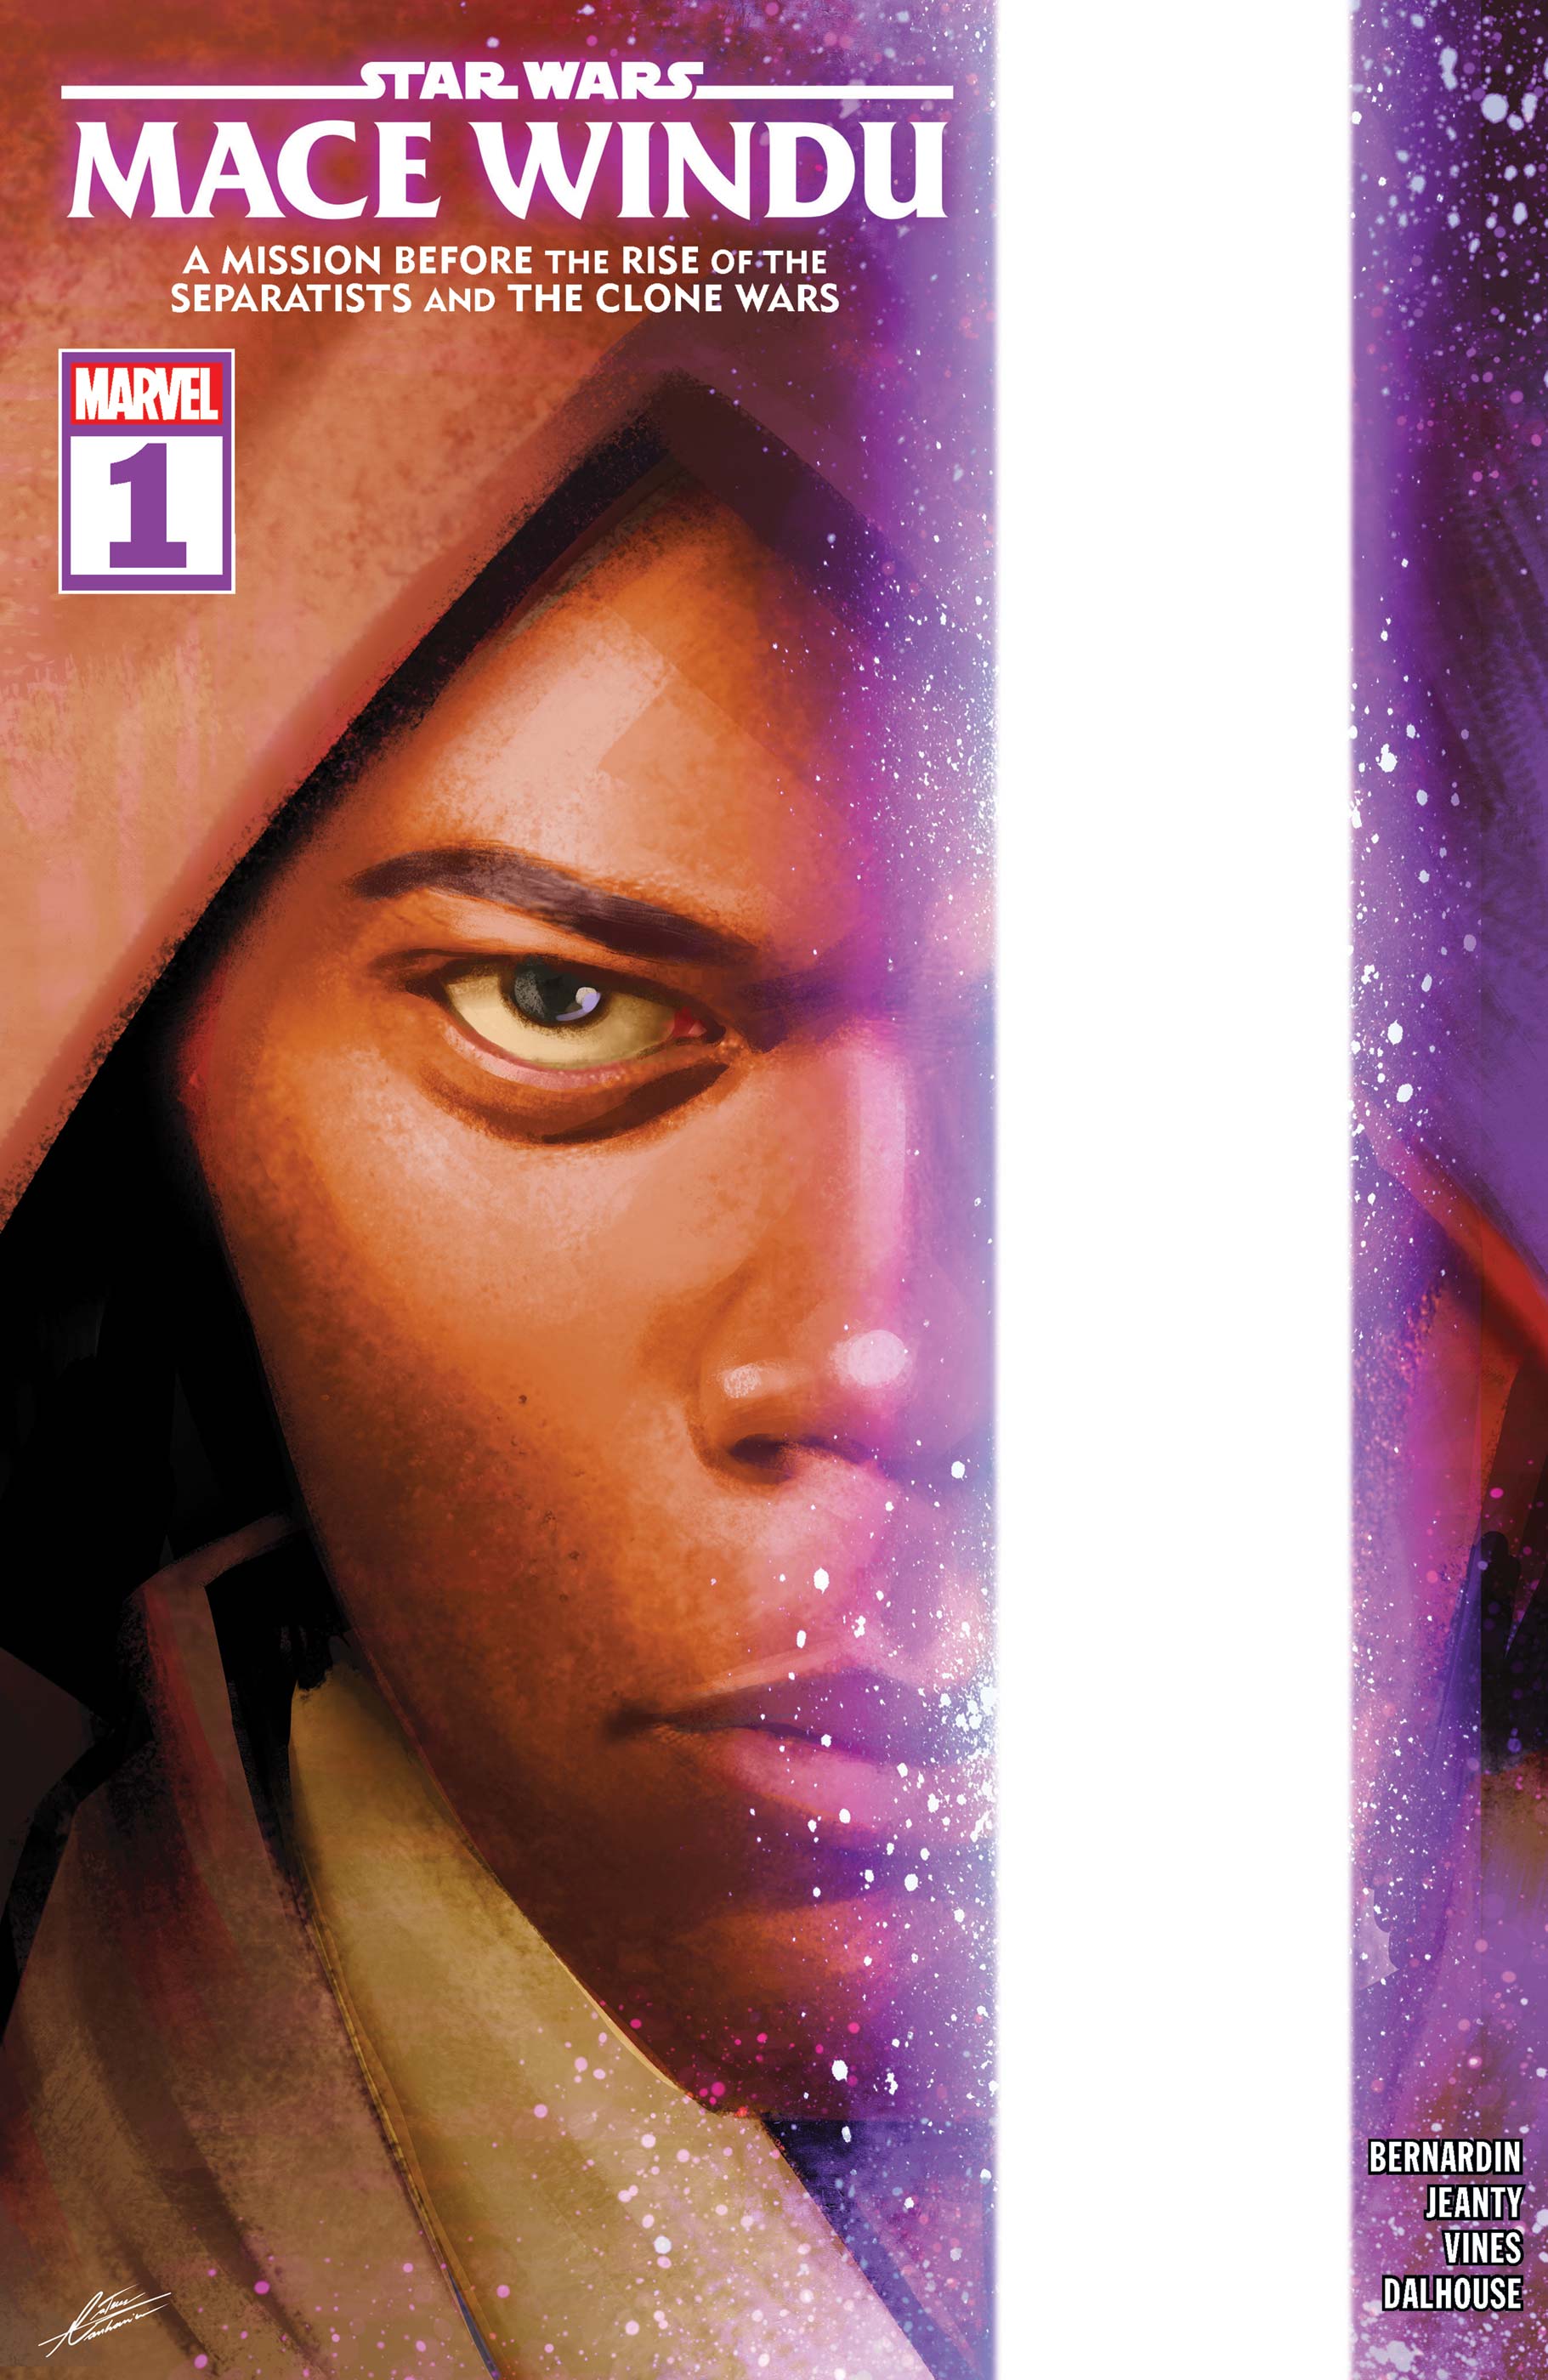 Star Wars: Mace Windu (2024) #1